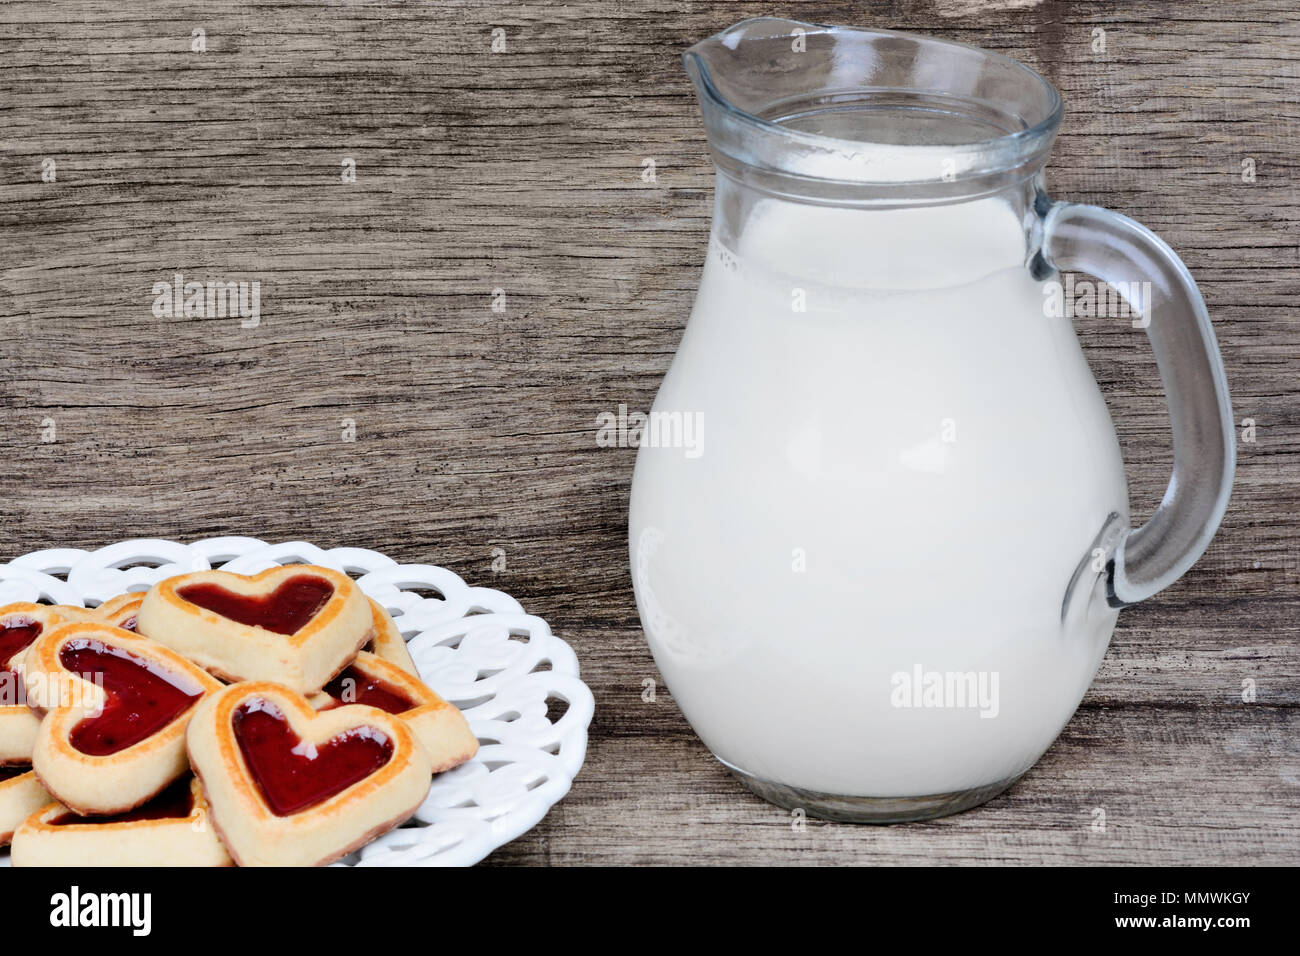 Cuore i cookie in una piastra con la brocca del latte sul tavolo di legno Foto Stock